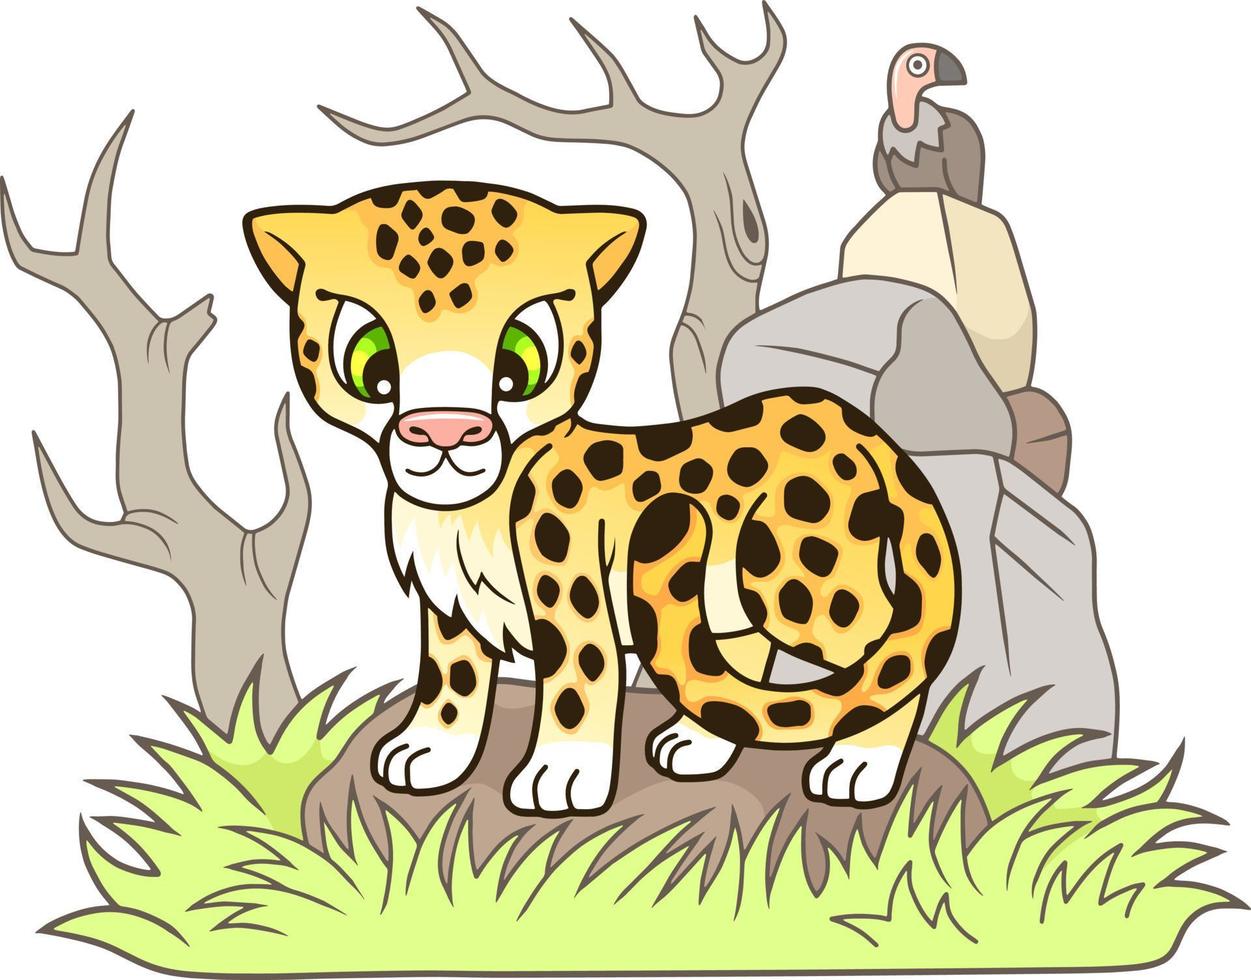 carino cartone animato ghepardo vettore